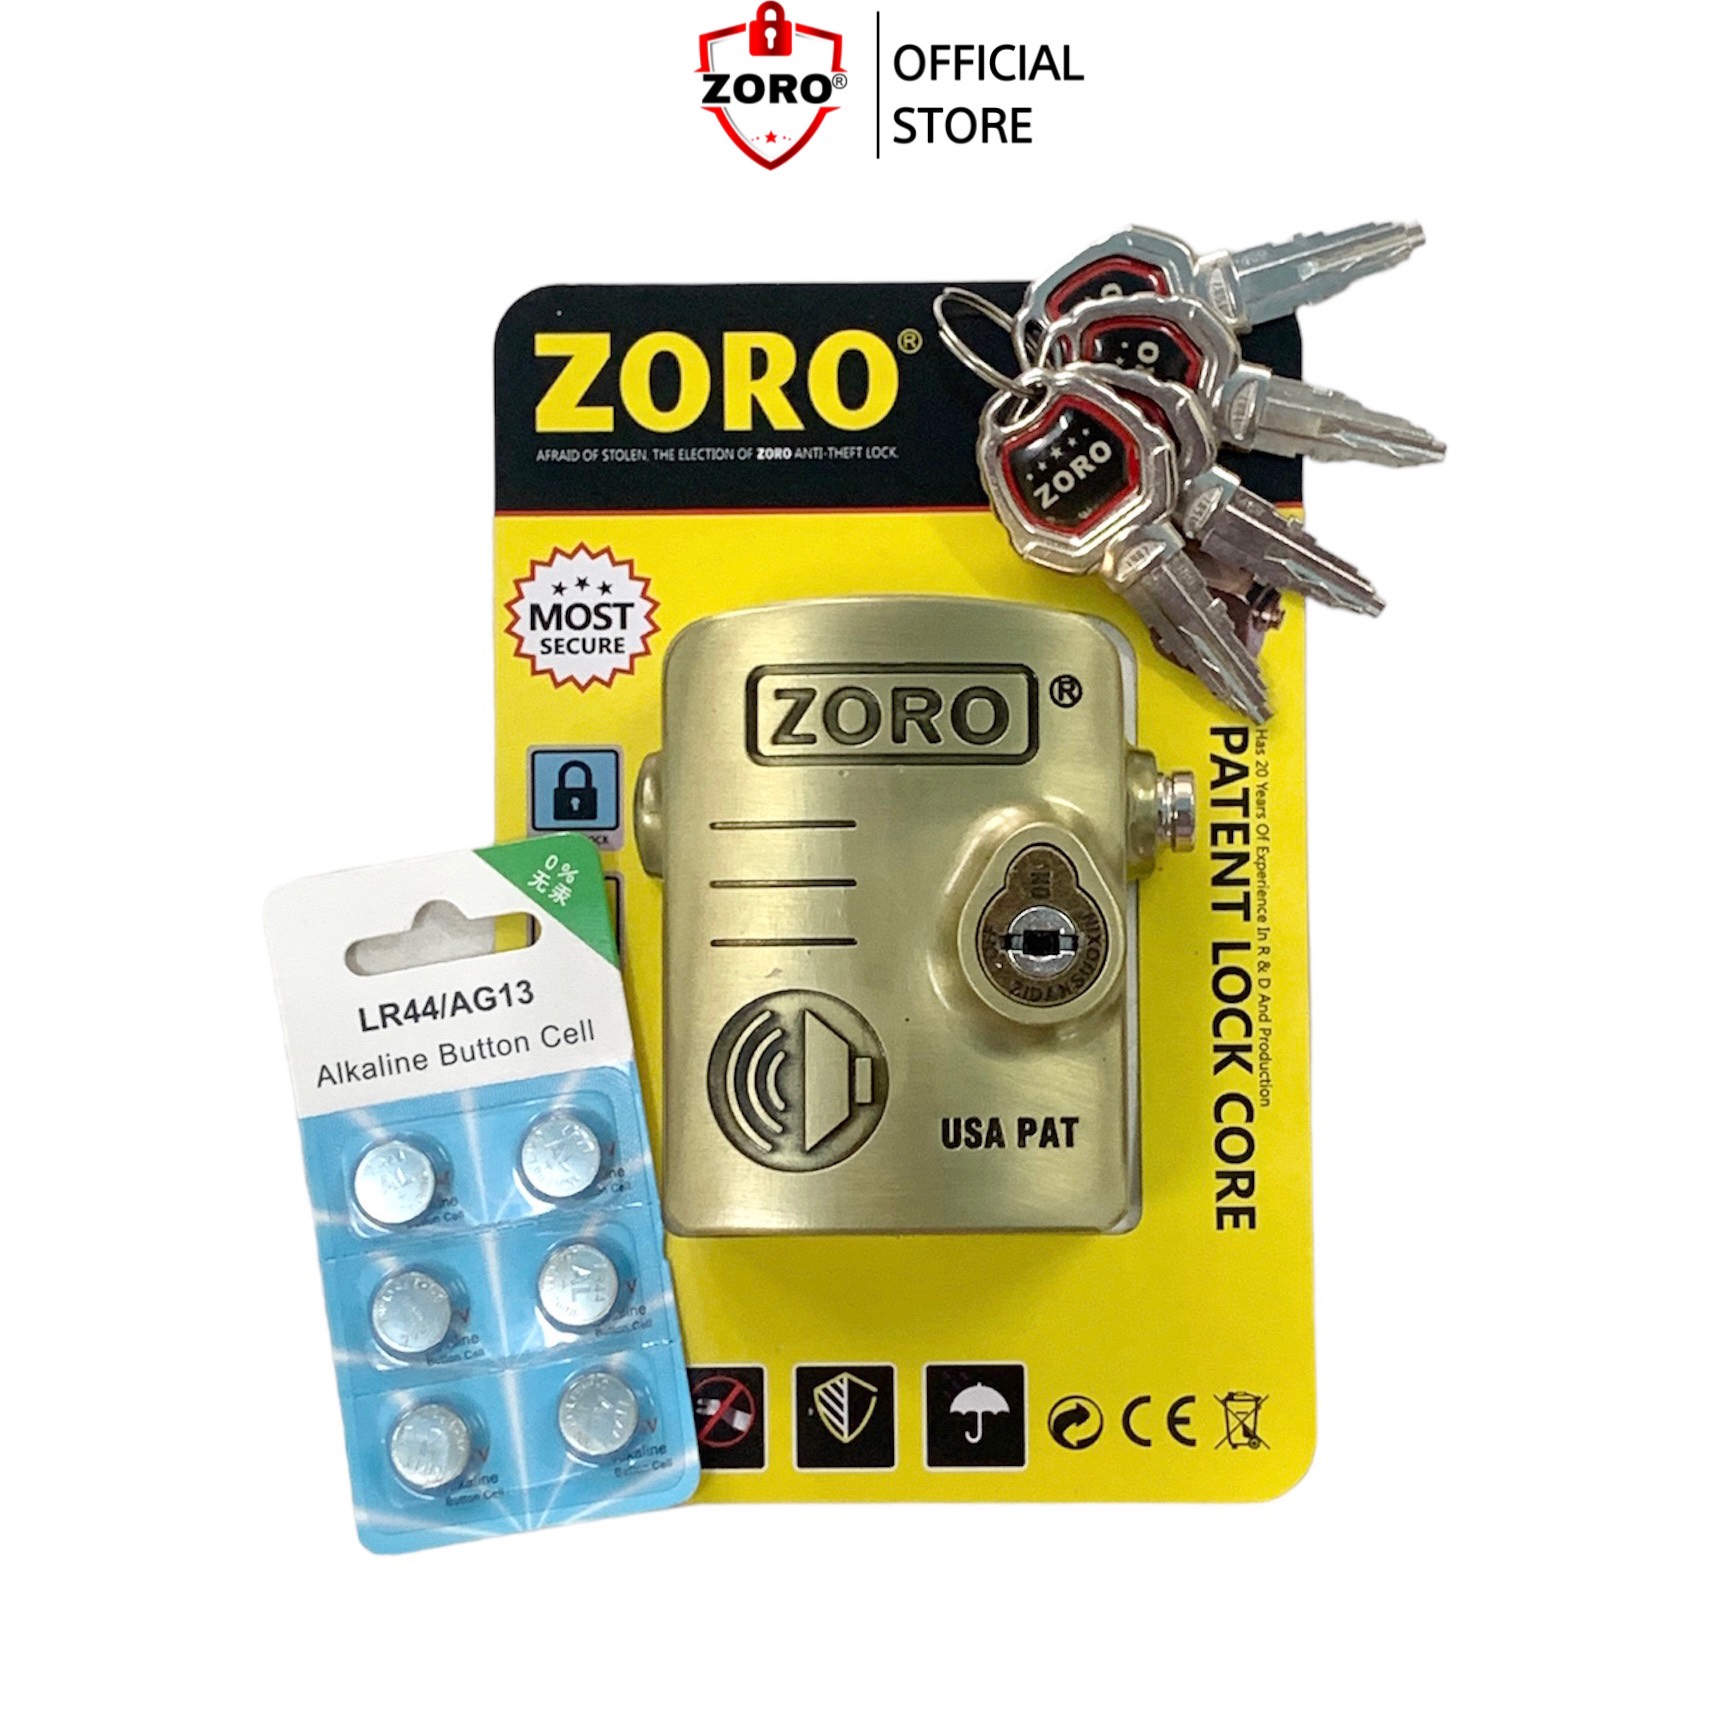 Ổ khóa chụp bát cửa báo động chống trộm ZORO thông minh - màu vàng đồng - khóa chụp chống cắt toàn diện, chống cắt khoen cửa - hàng chính hãng